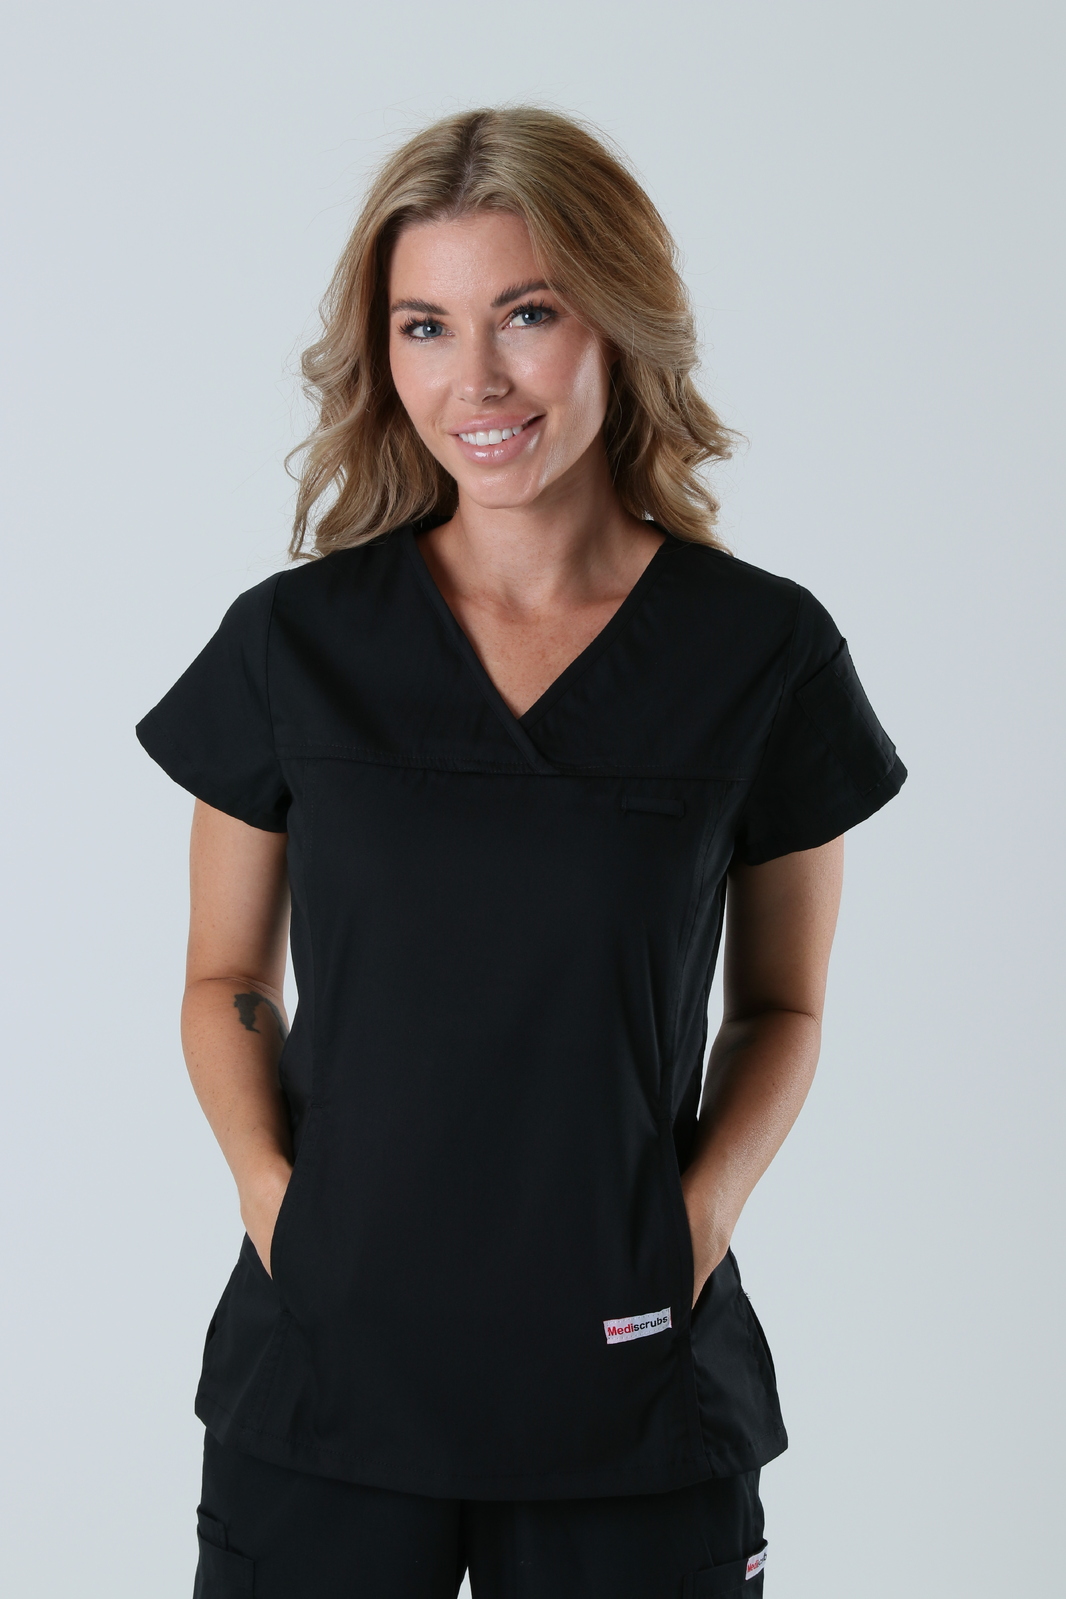 Queensland Children's Hospital Emergency Department Doctor Uniform Top Bundle (Women's Fit Top in Black  incl Logos)